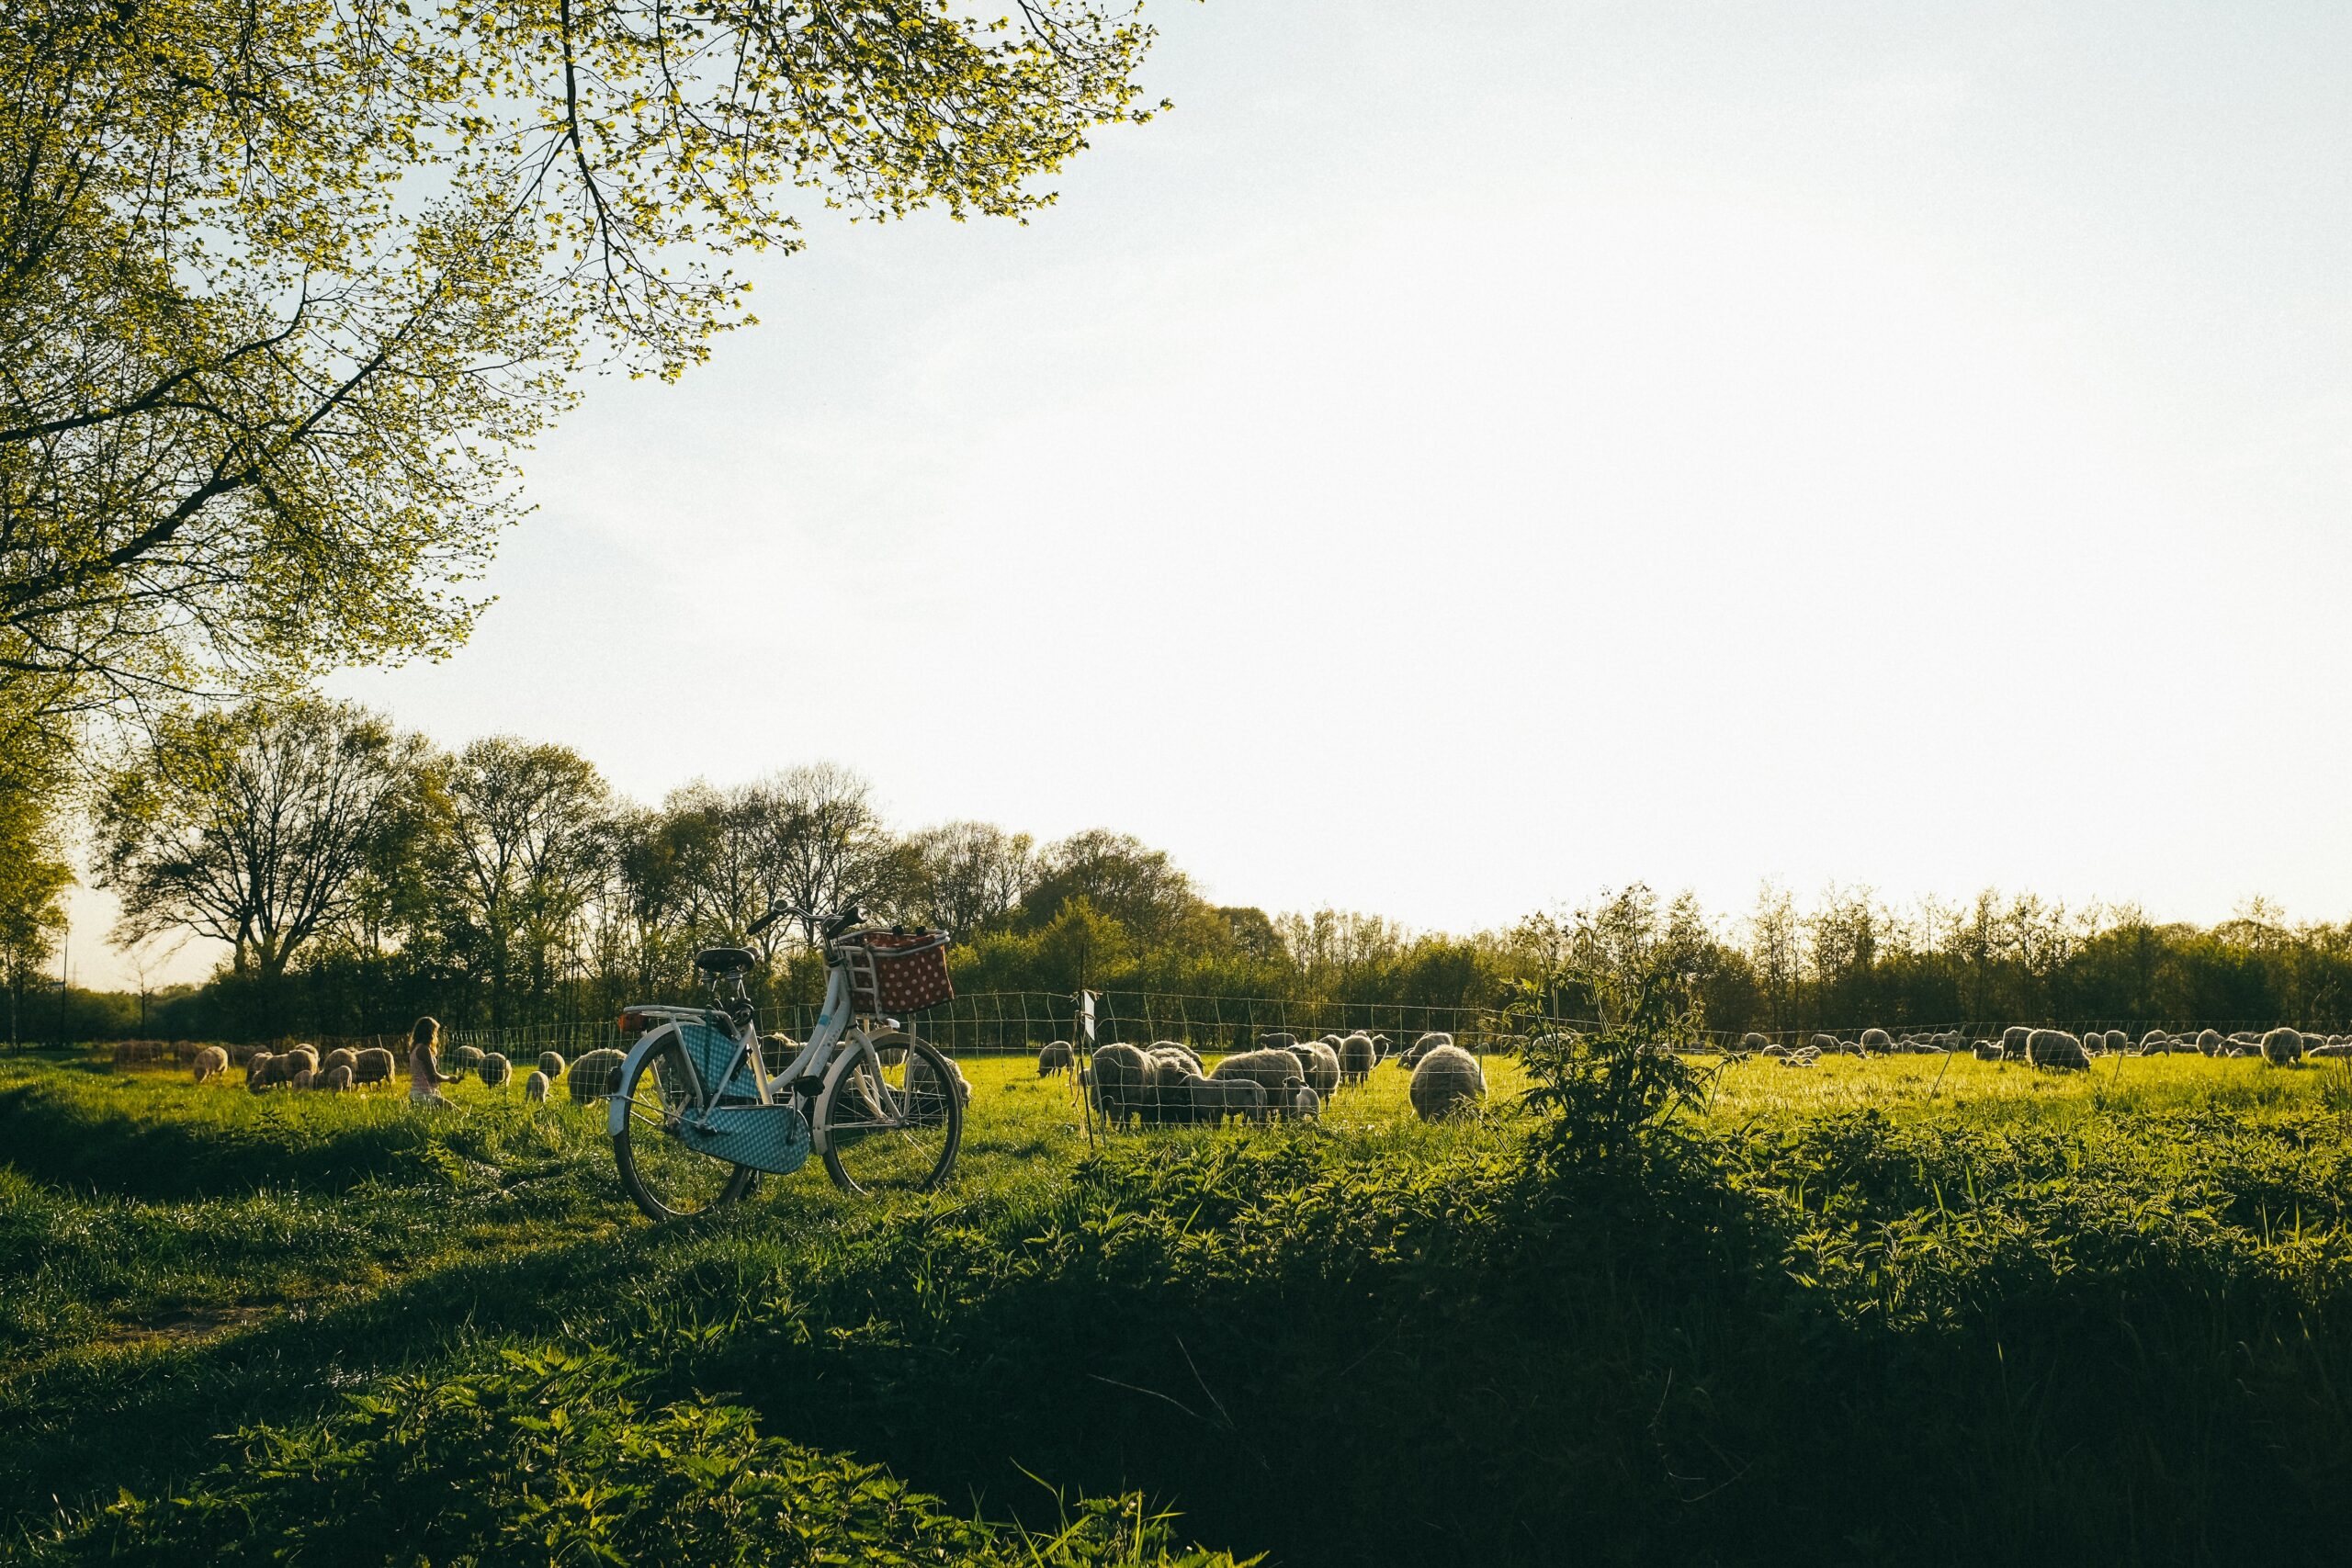 Sallands landschap met schapen, een fiets tegen het hek